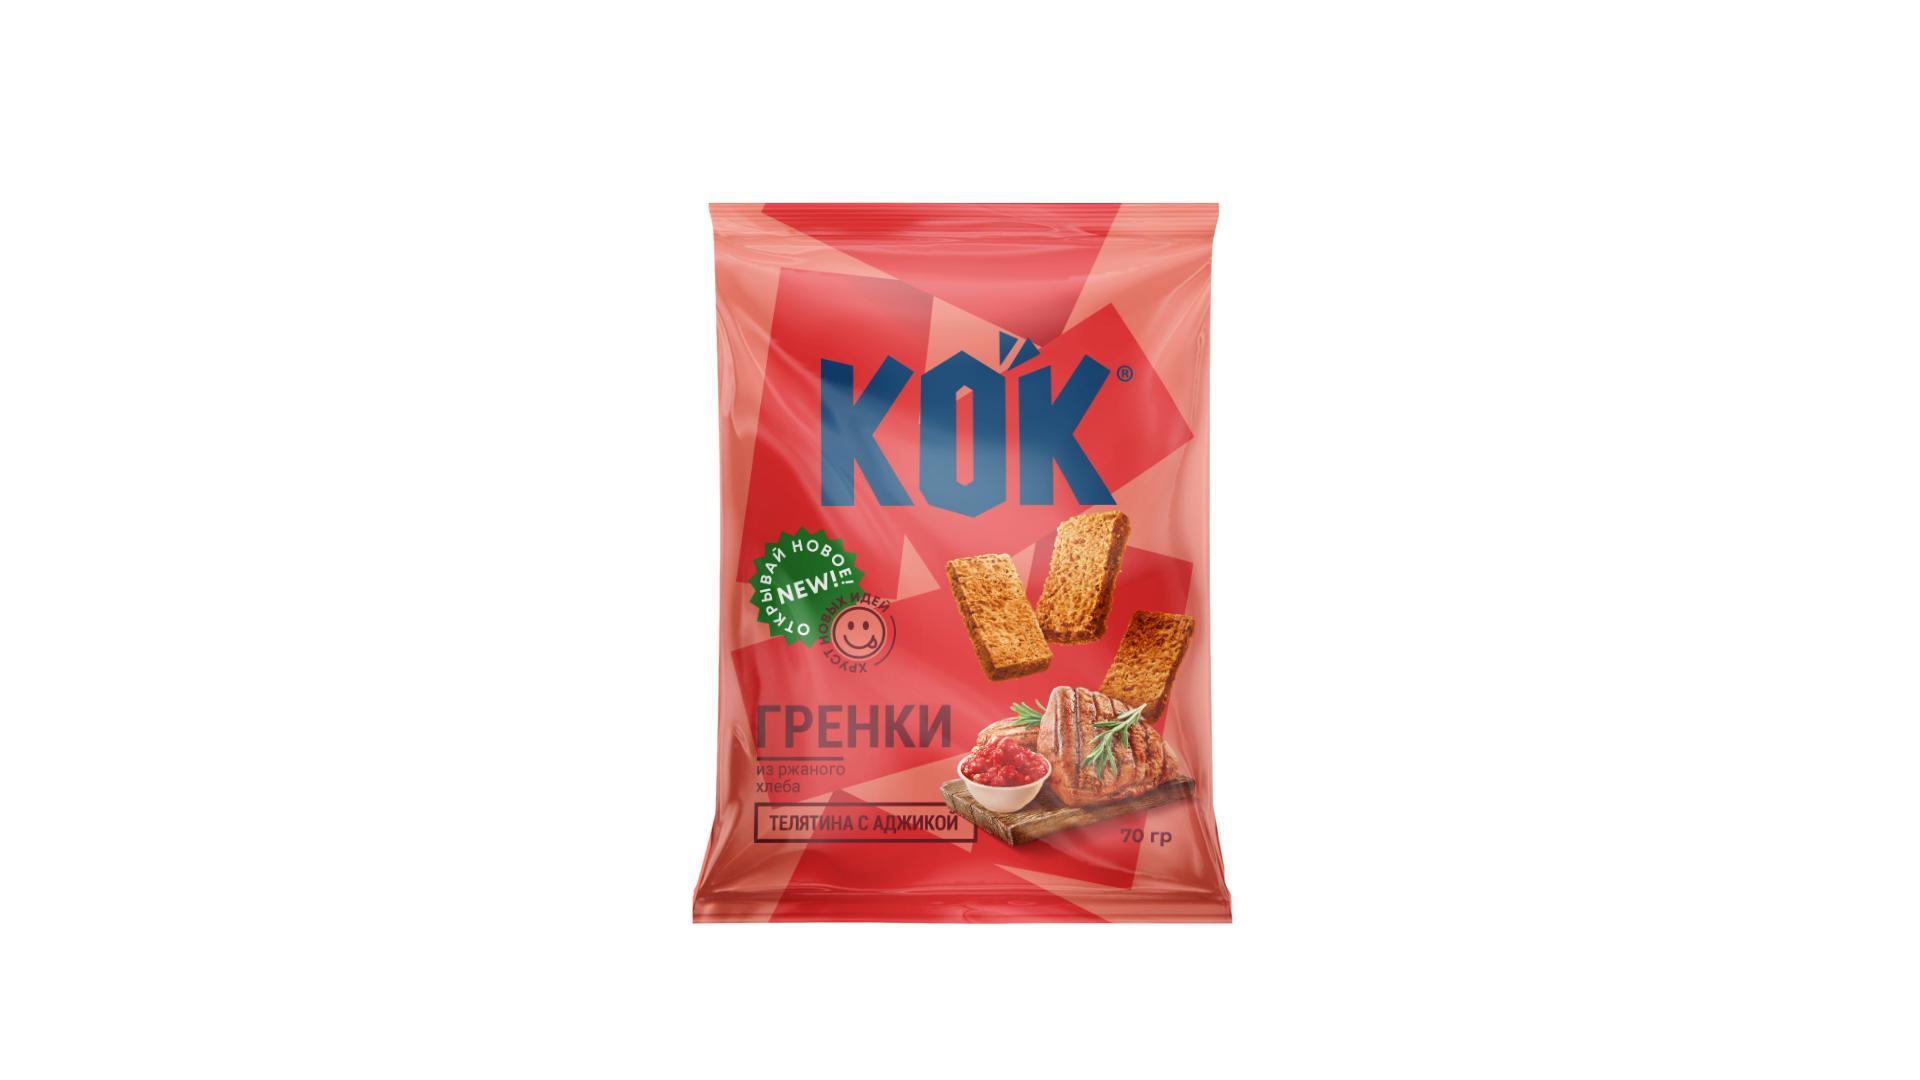 Гренки Kok из ржаного хлеба со вкусом телятины с аджикой 70 гр., флоу-пак